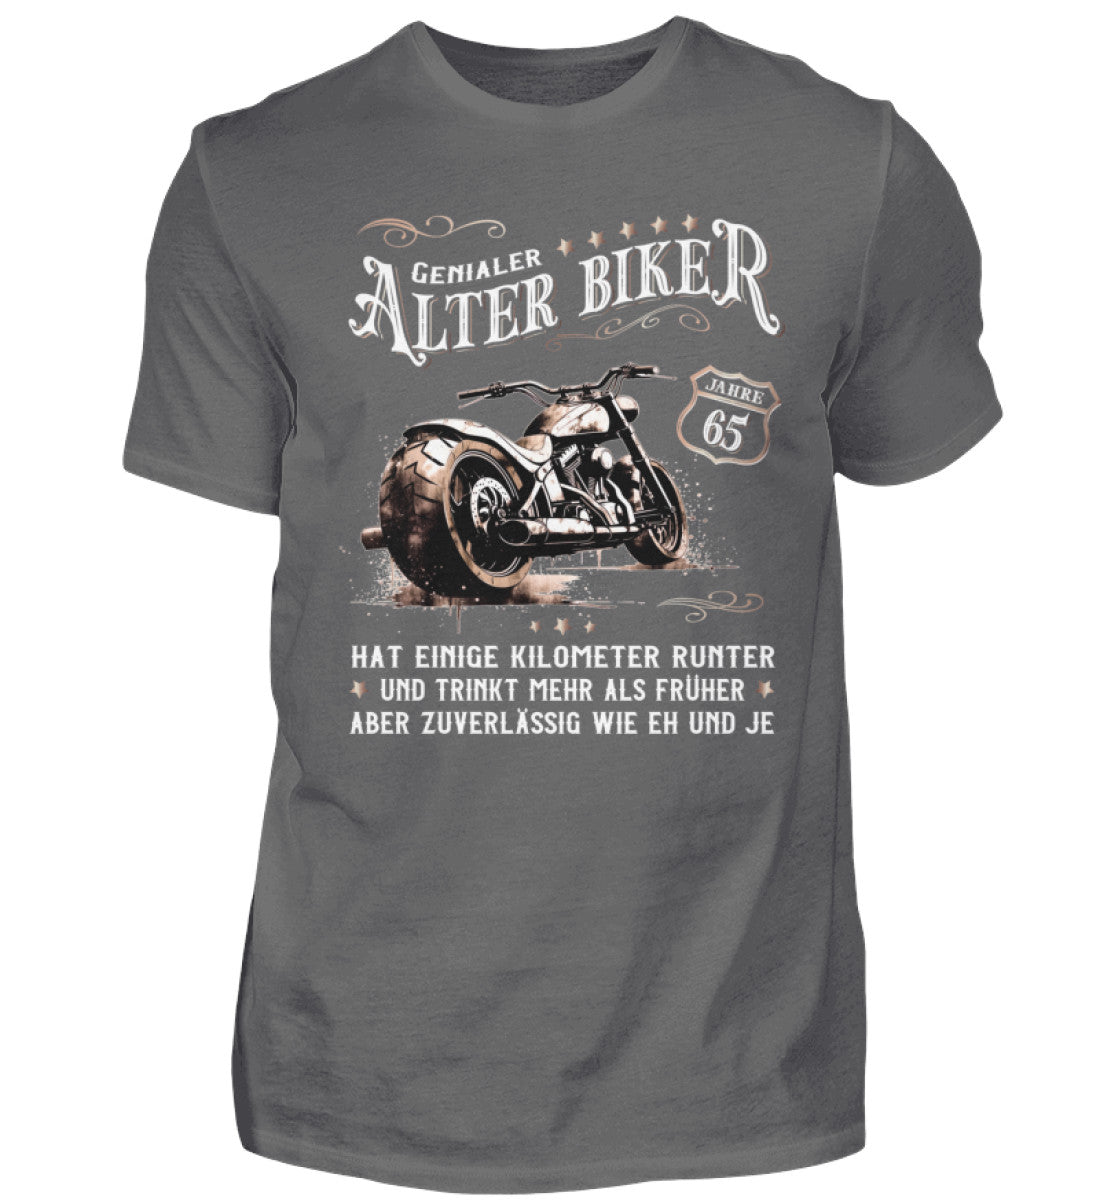 Ein Biker T-Shirt zum Geburtstag für Motorradfahrer von Wingbikers mit dem Aufdruck, Alter Biker - 65 Jahre - Einige Kilometer runter, trinkt mehr - aber zuverlässig wie eh und je - in grau.